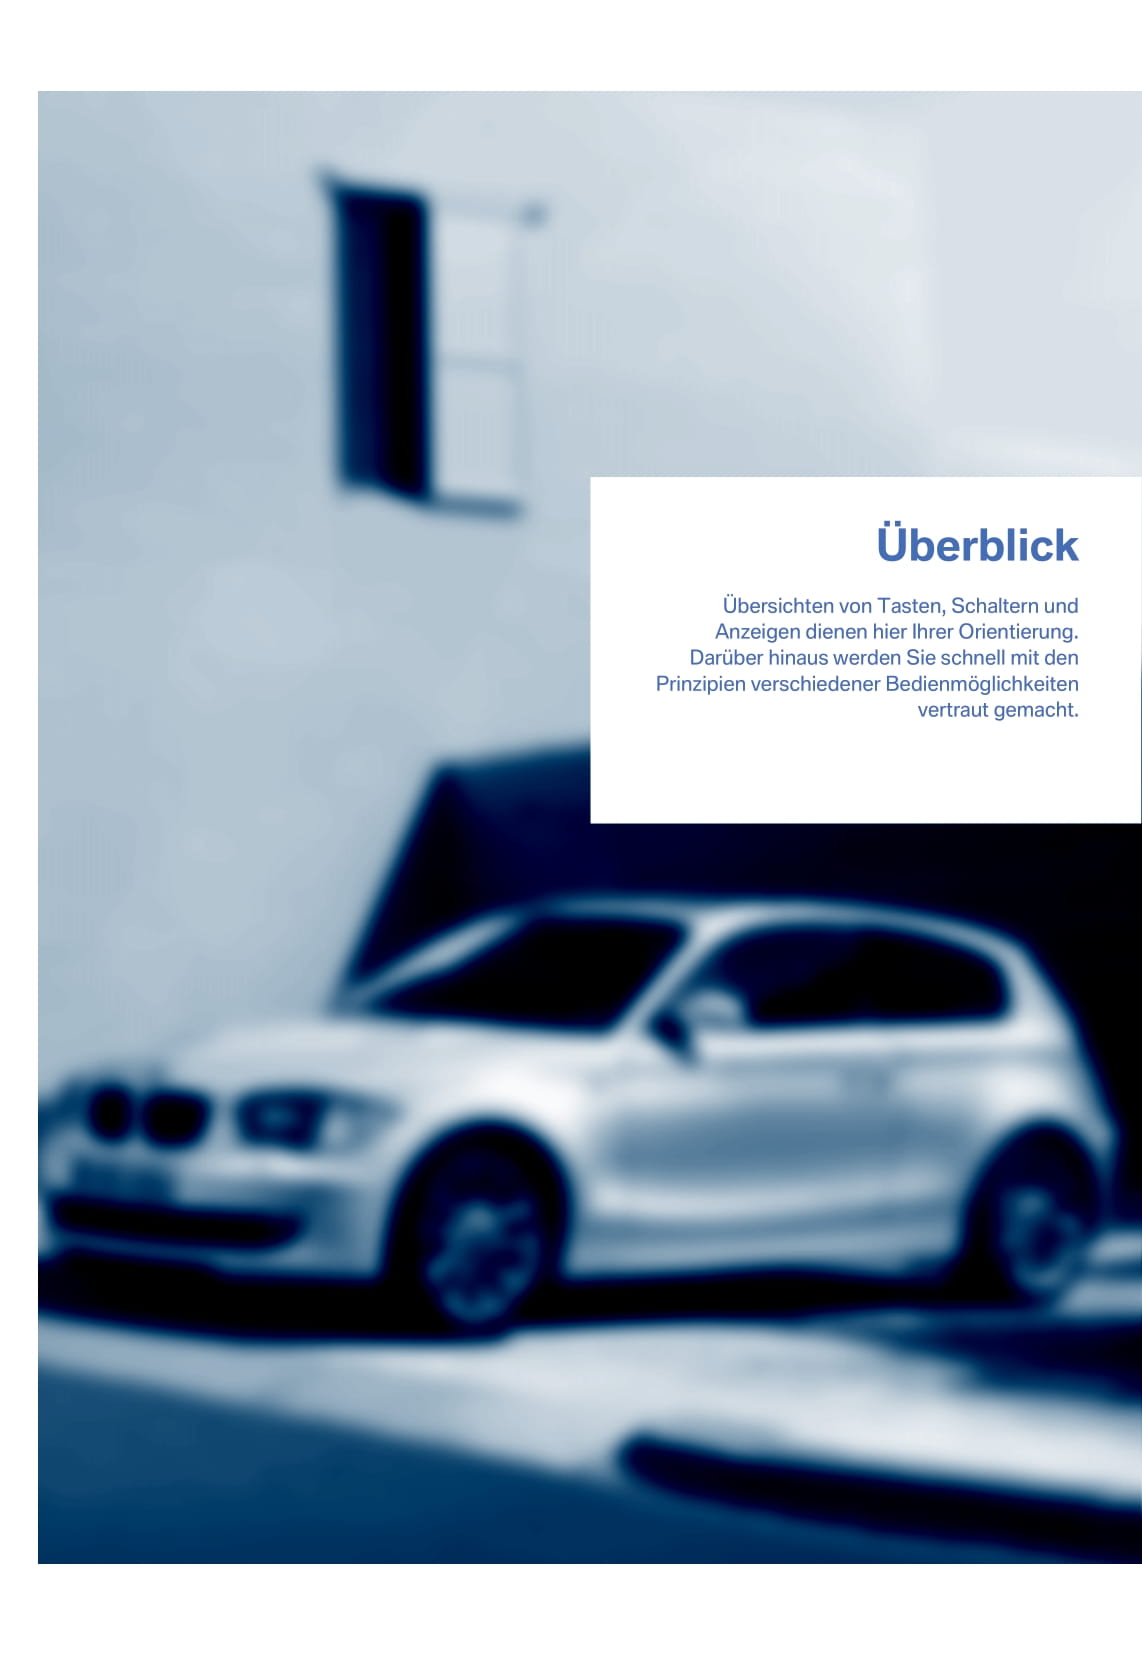 2007 BMW 1 Series Bedienungsanleitung | Deutsch